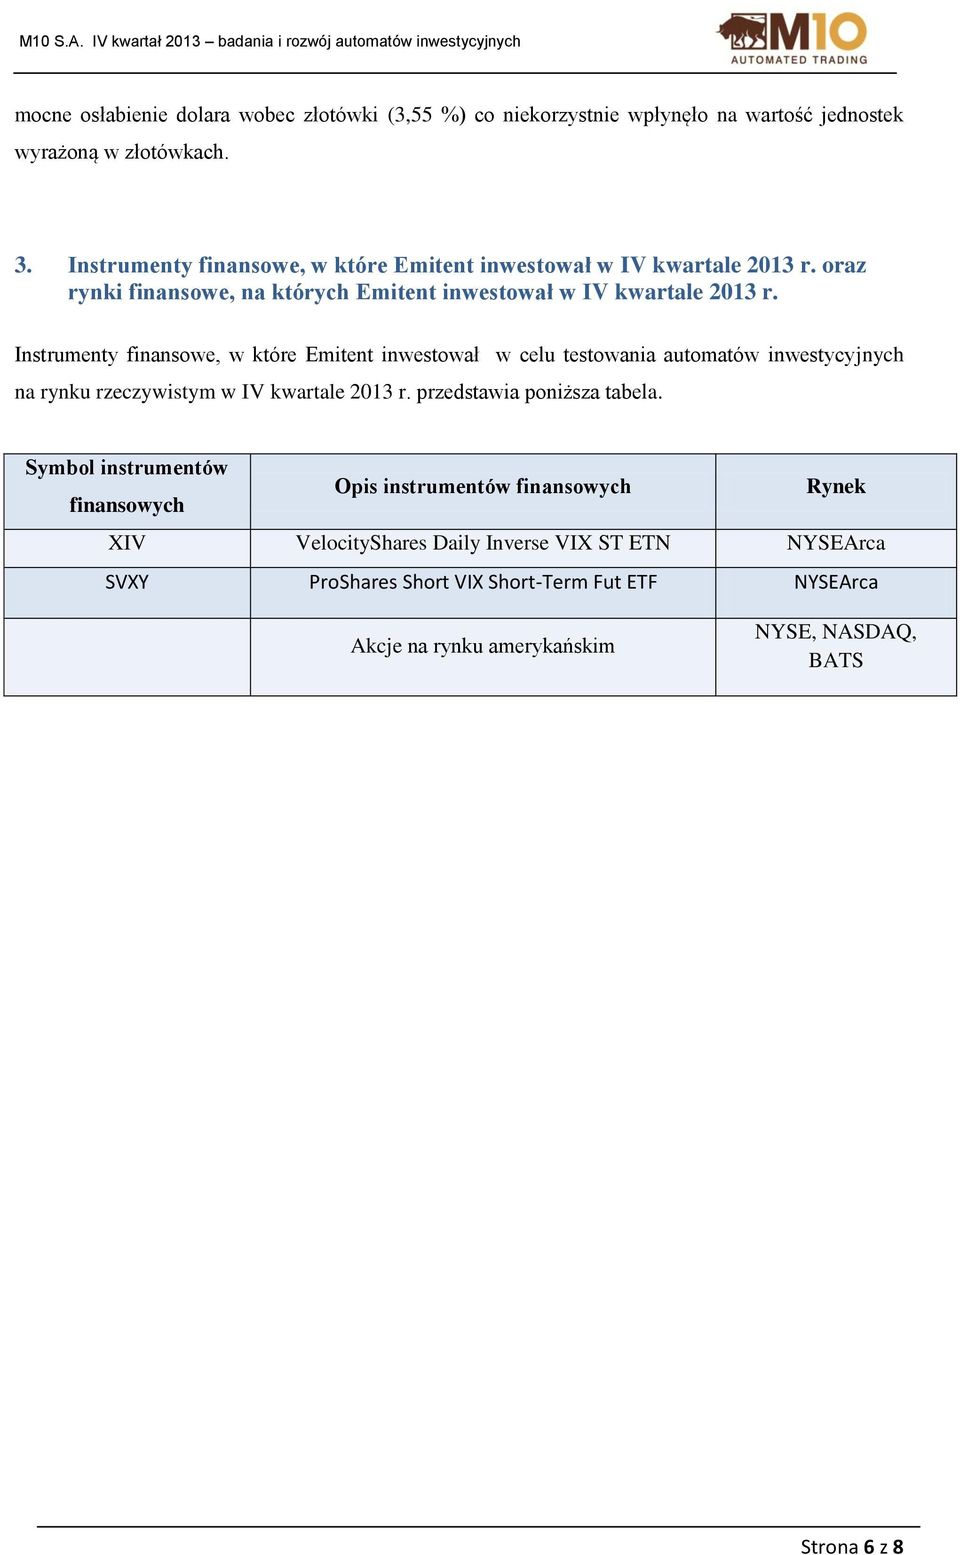 Instrumenty finansowe, w które Emitent inwestował w celu testowania automatów inwestycyjnych na rynku rzeczywistym w IV kwartale 2013 r. przedstawia poniższa tabela.